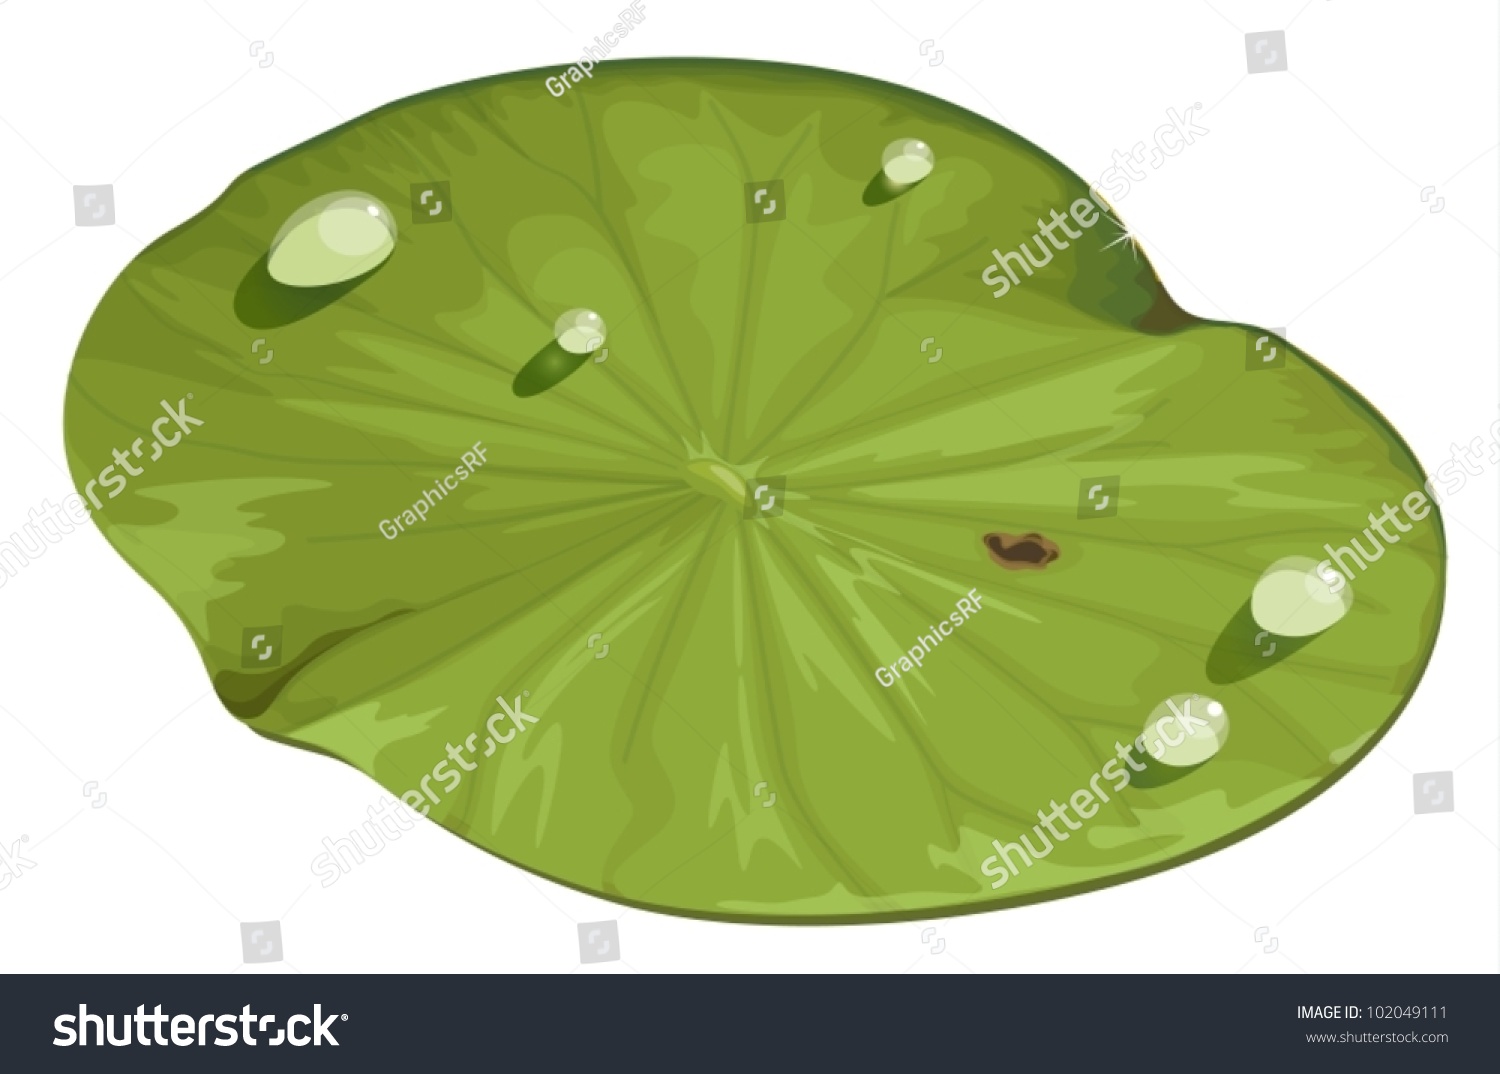 SVG of Illustration of a lotus leaf svg